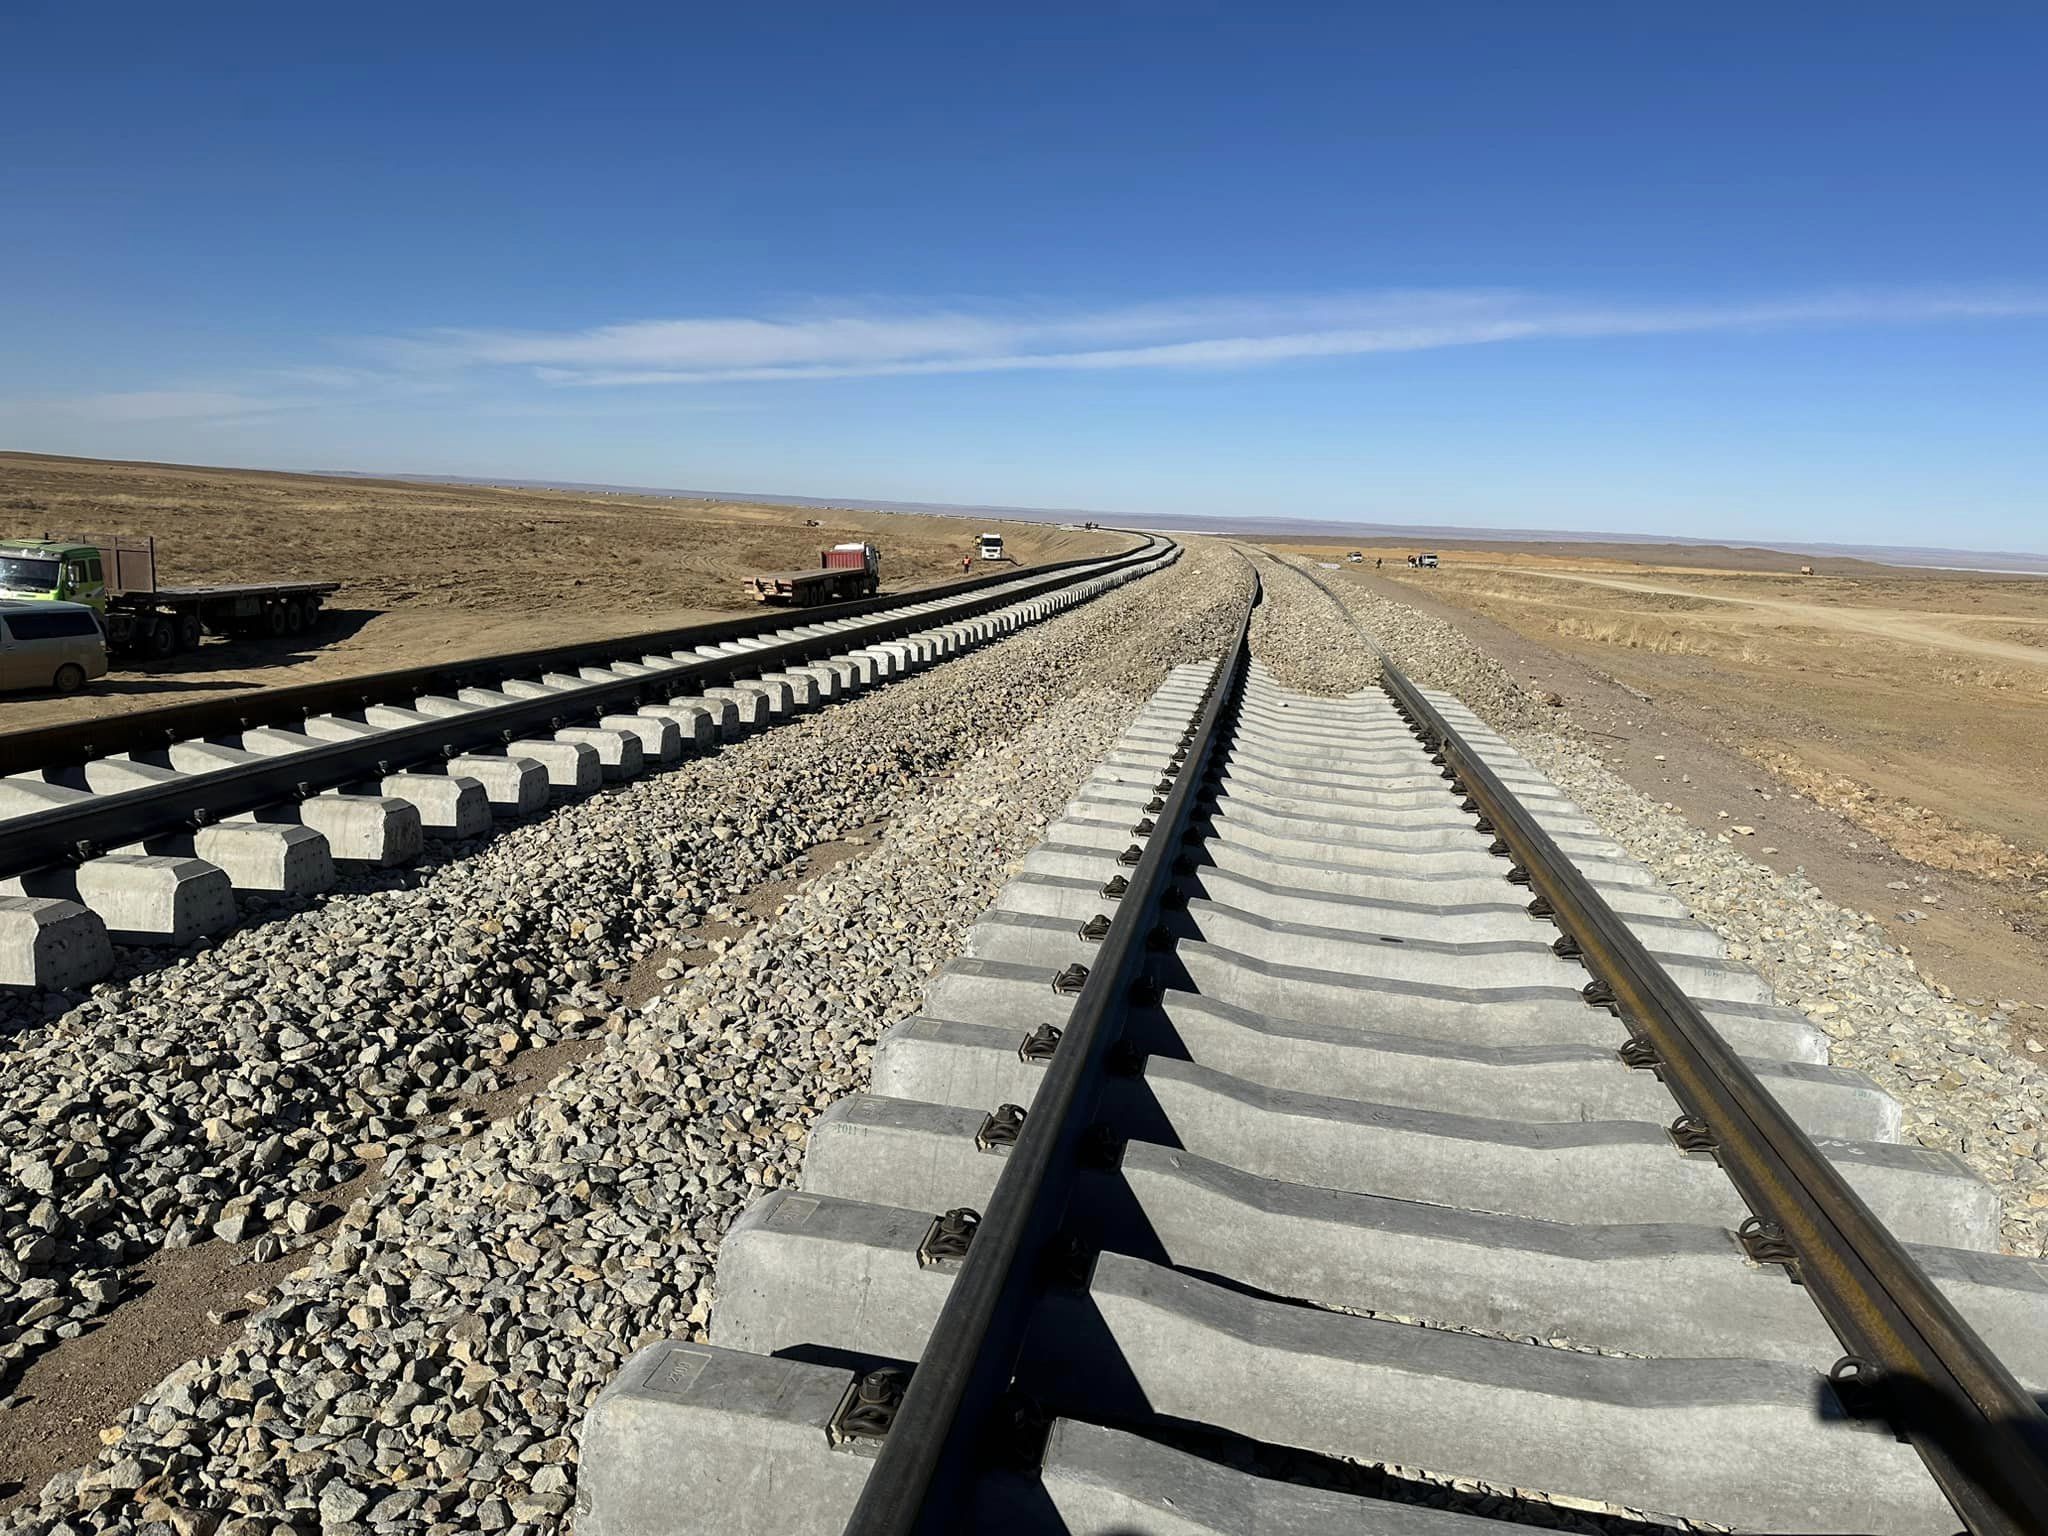 "Зүүнбаян-Ханги" чиглэлийн 240км төмөр замын бүтээн байгуулалтыг Монголчууд хийлээ